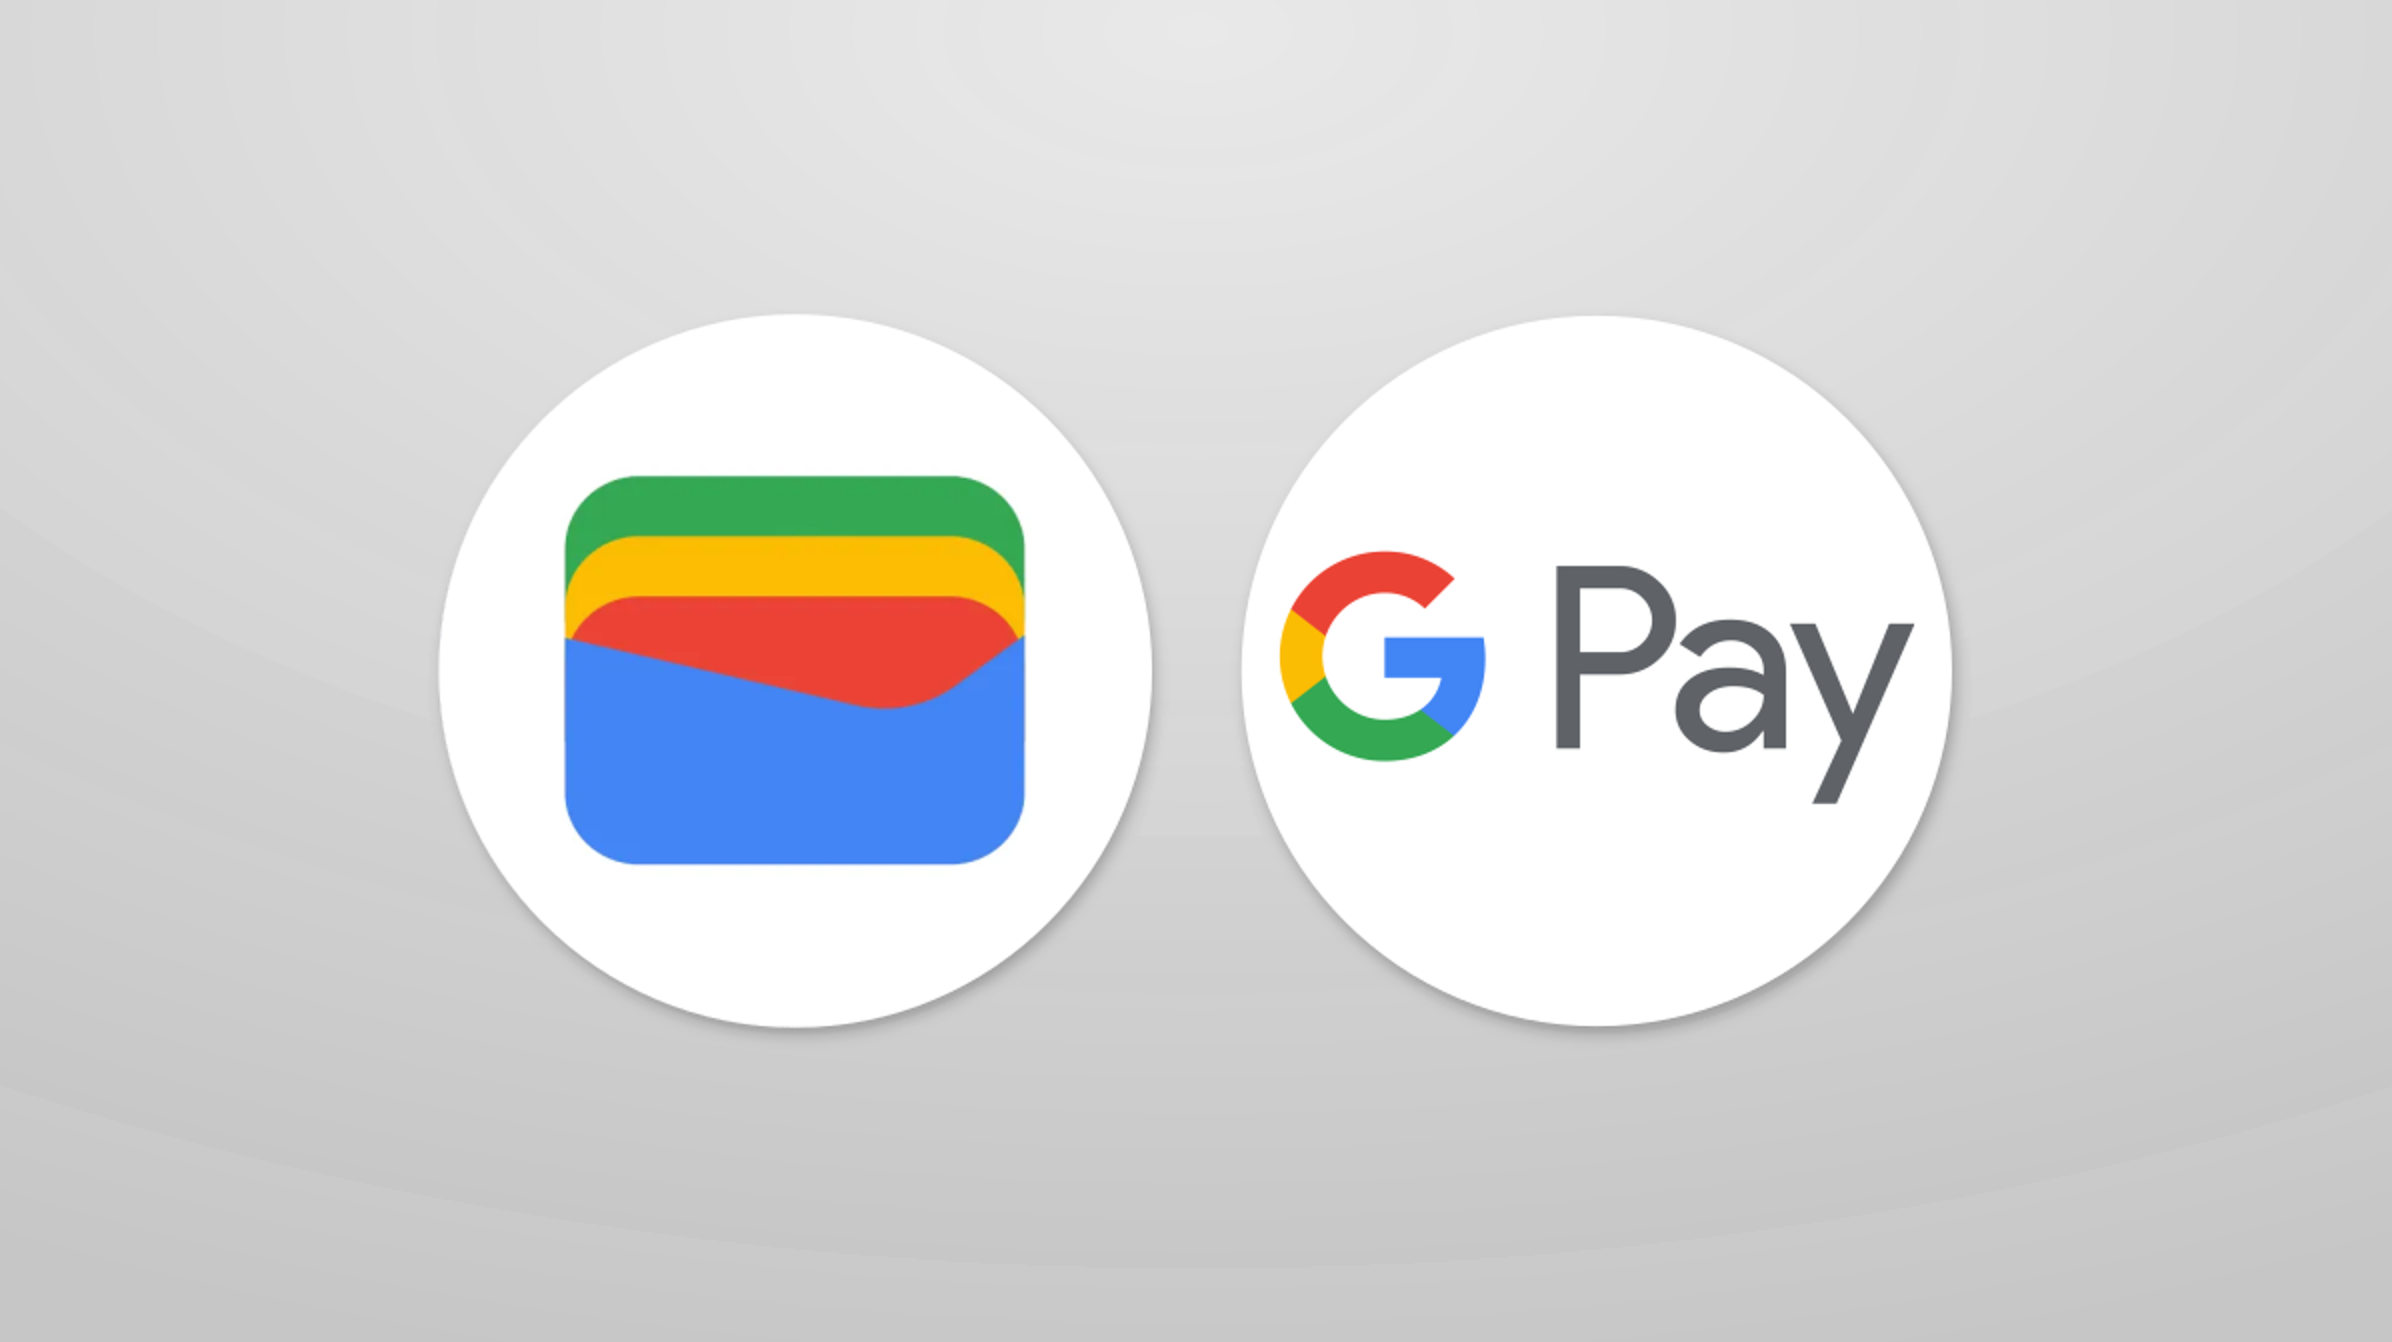 Google ha regalado por error hasta 1.000 dólares a los usuarios habituales de Google Pay que no tienen que devolver